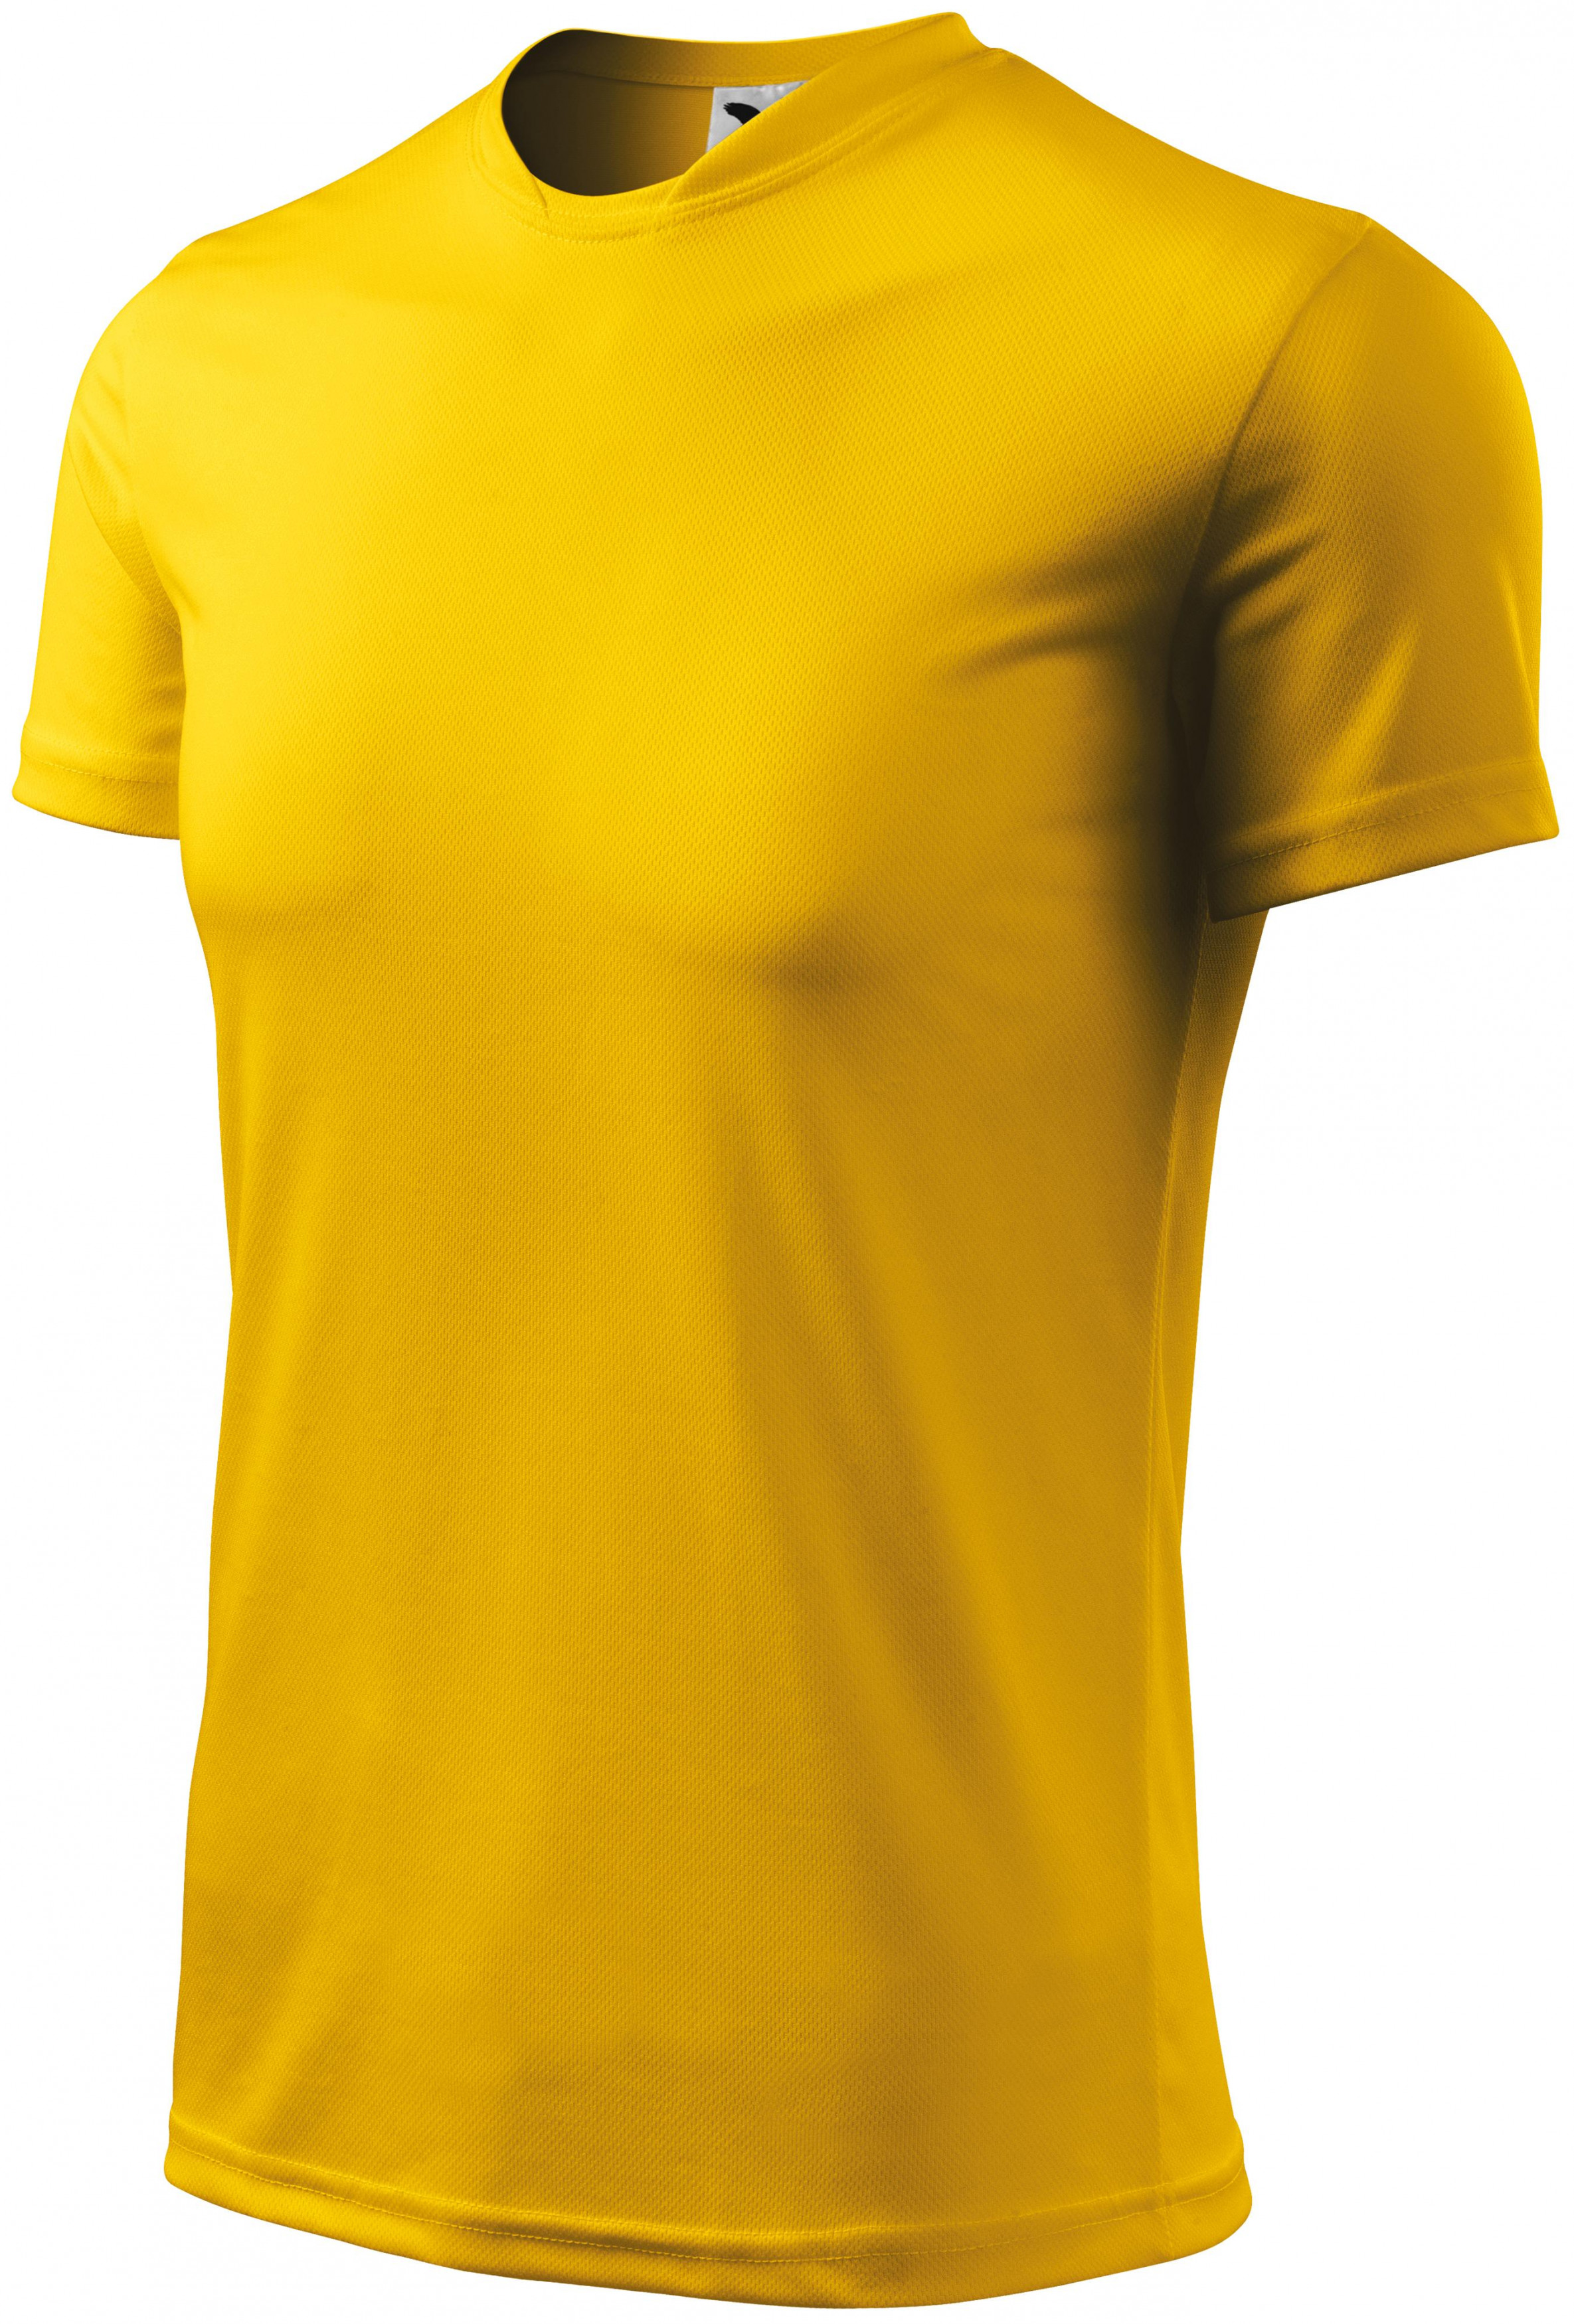 Športové tričko detské, žltá, 158cm / 12rokov